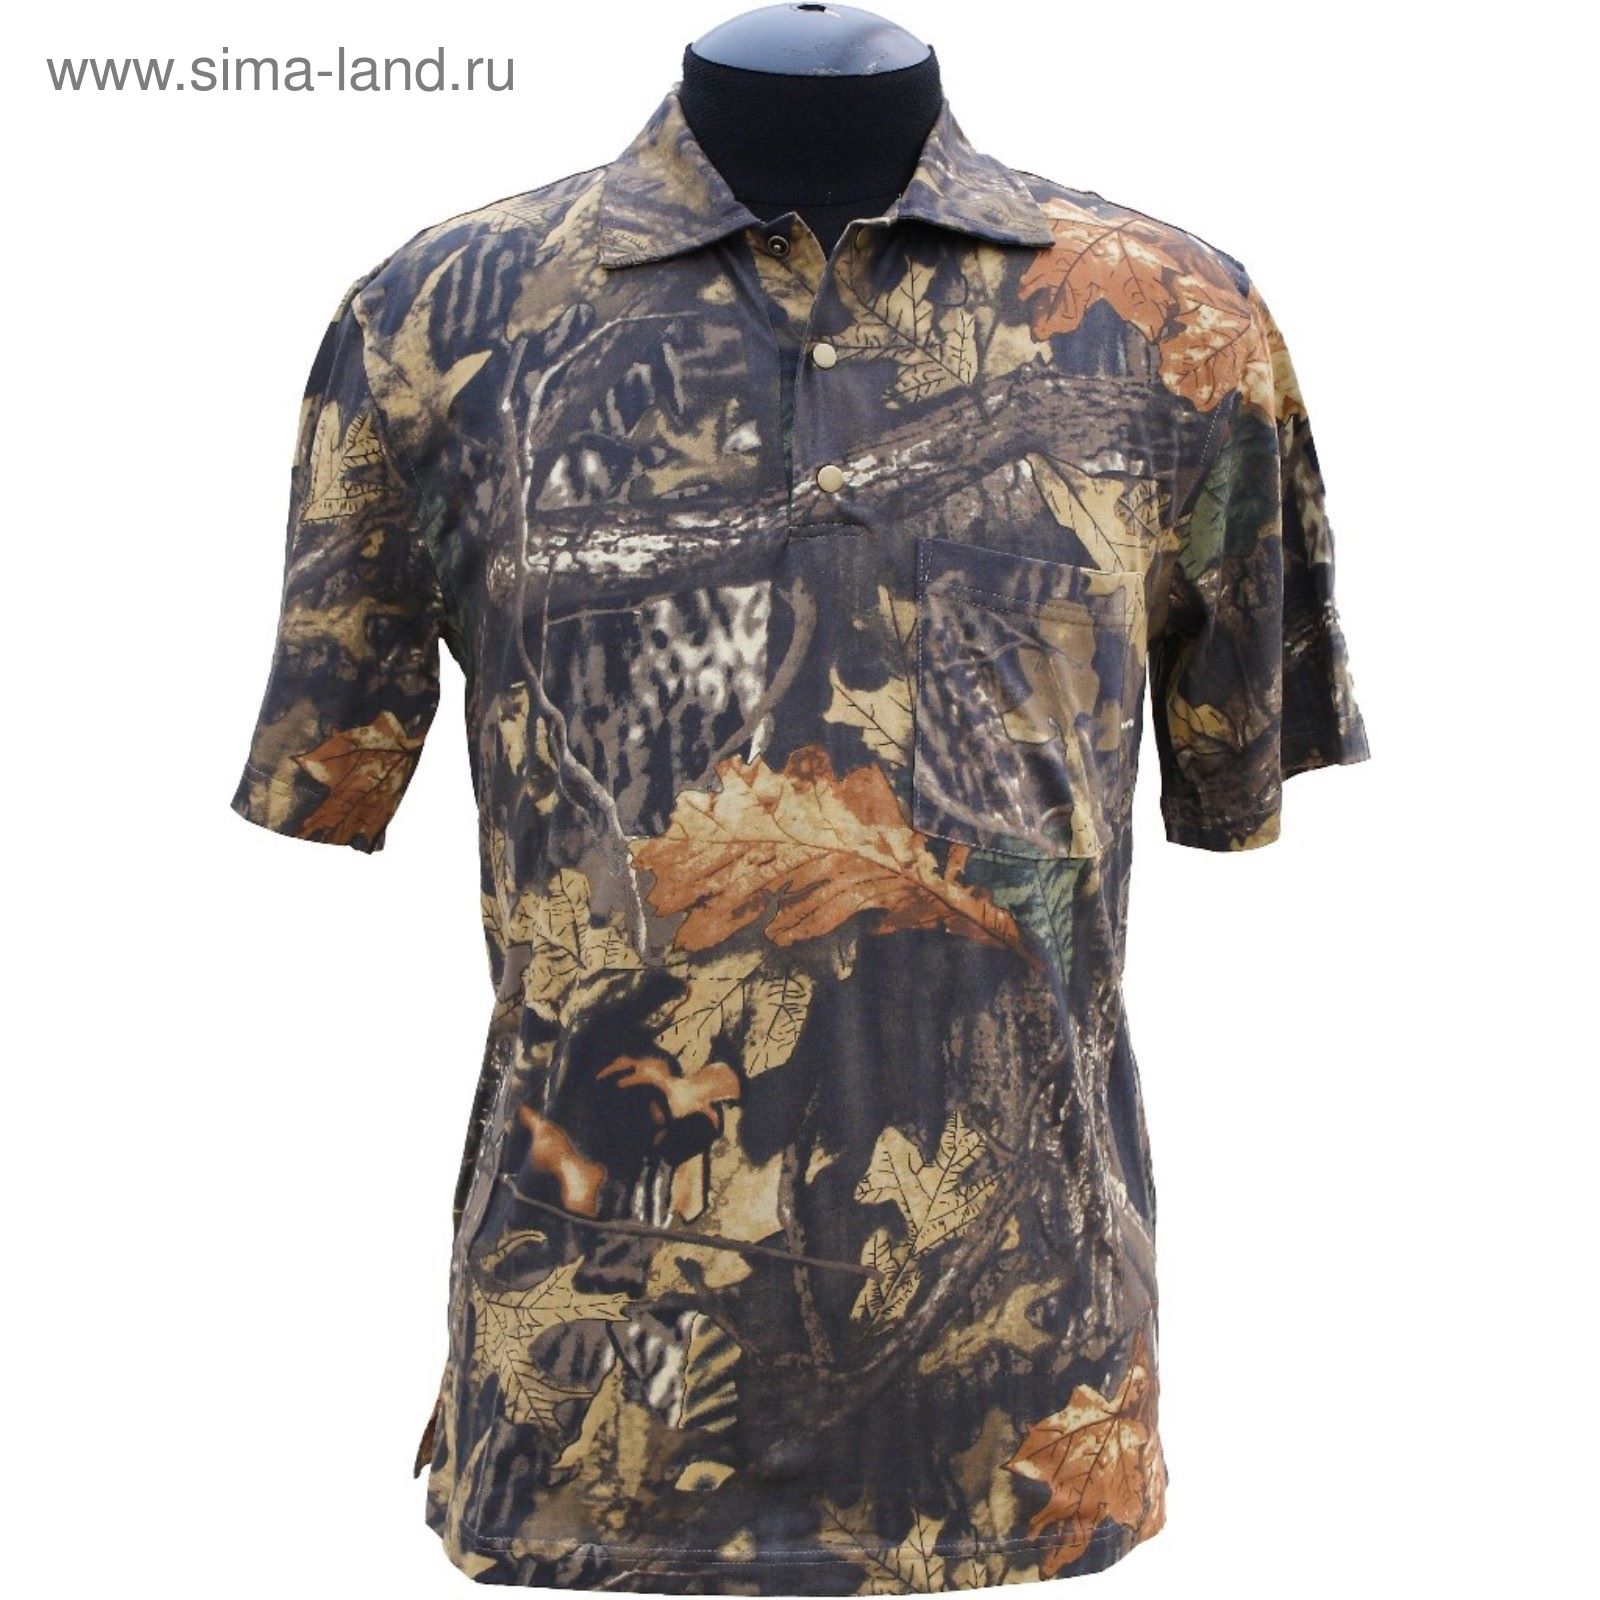 Рубашка с коротким рукавом (лес) 46/170-176 р-р